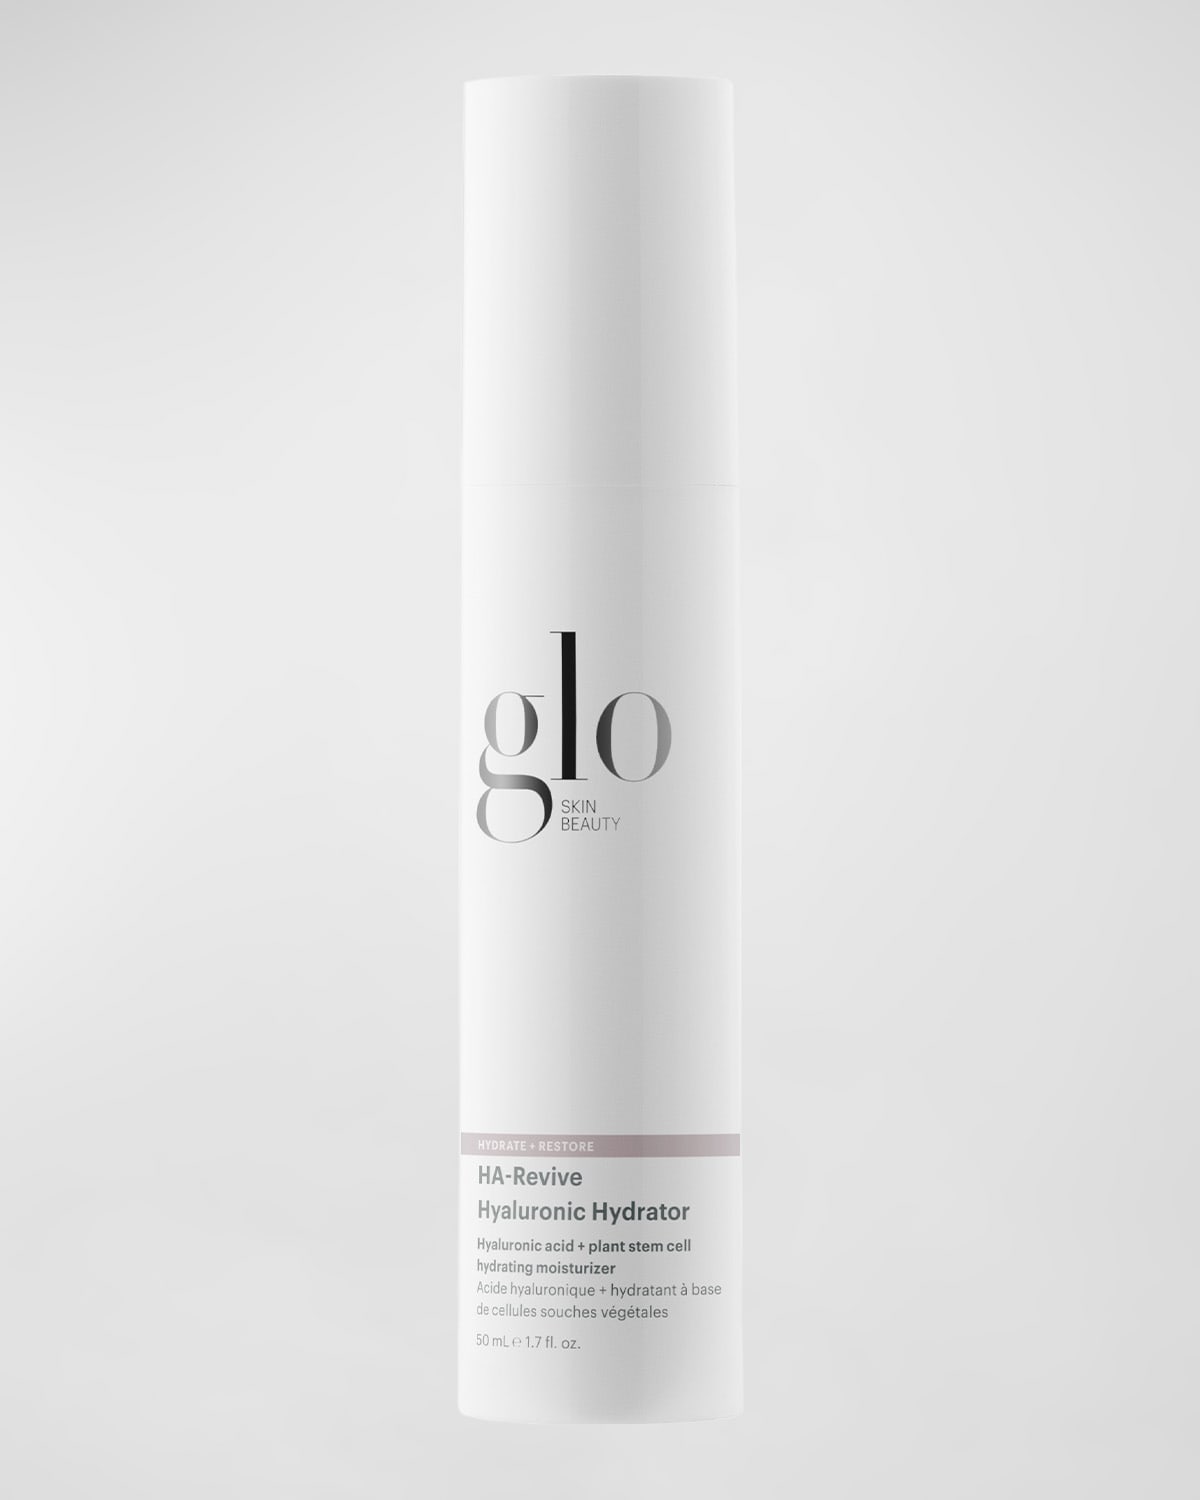 Glo Skin Beauty HA-Revive Hyaluronic Hydrator, 1.7 oz.